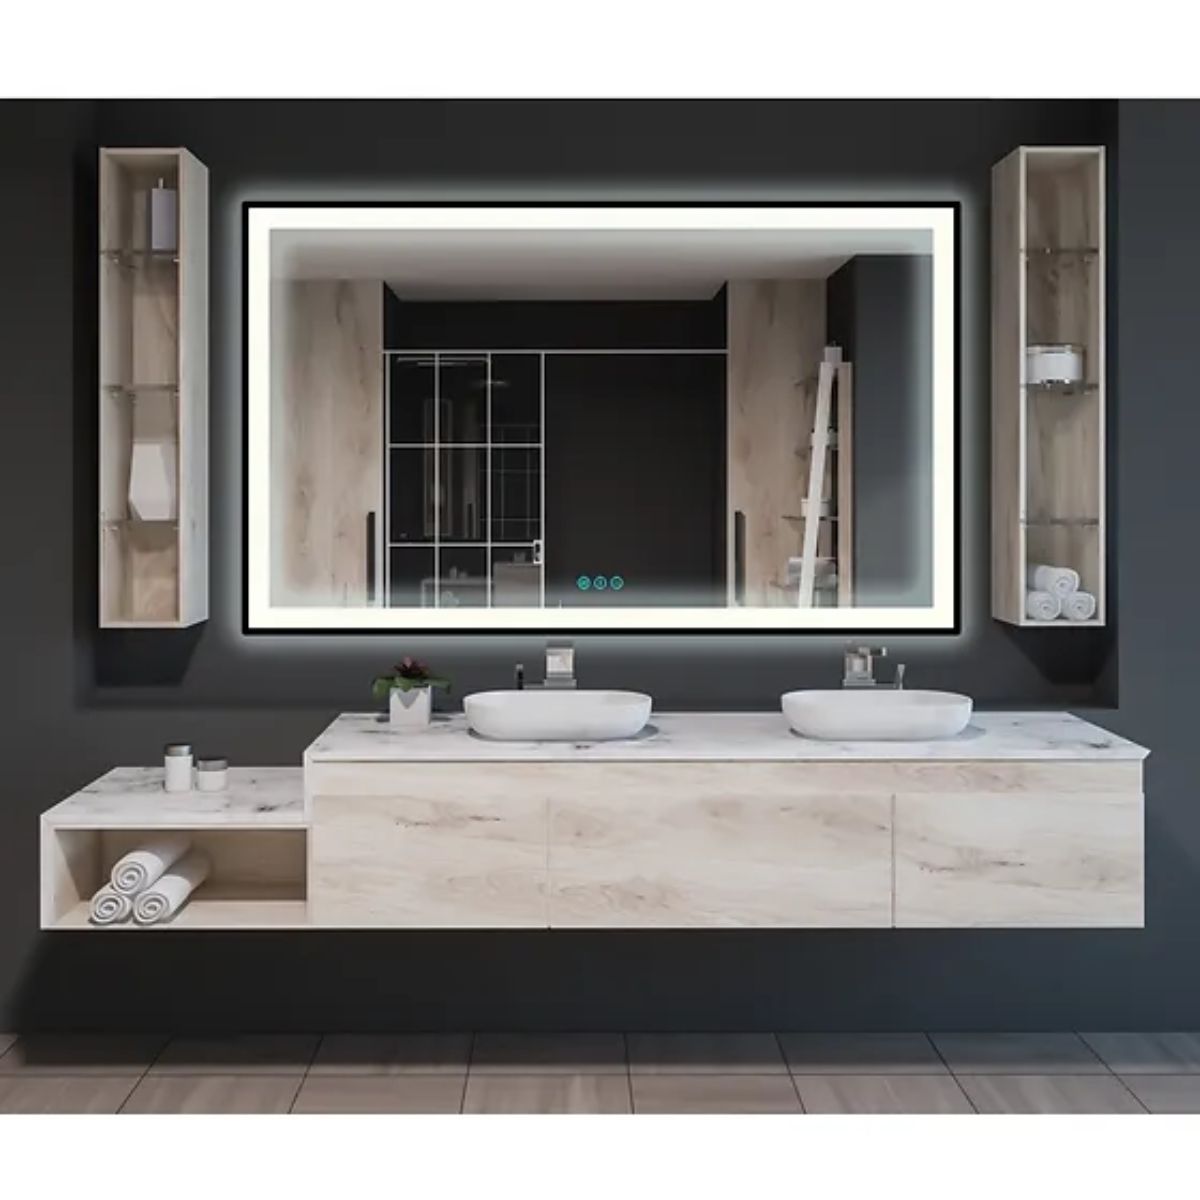 M21 Black Frame 82 In. X 32 In. LED Bathroom Vanity Mirror - Bees Lighting